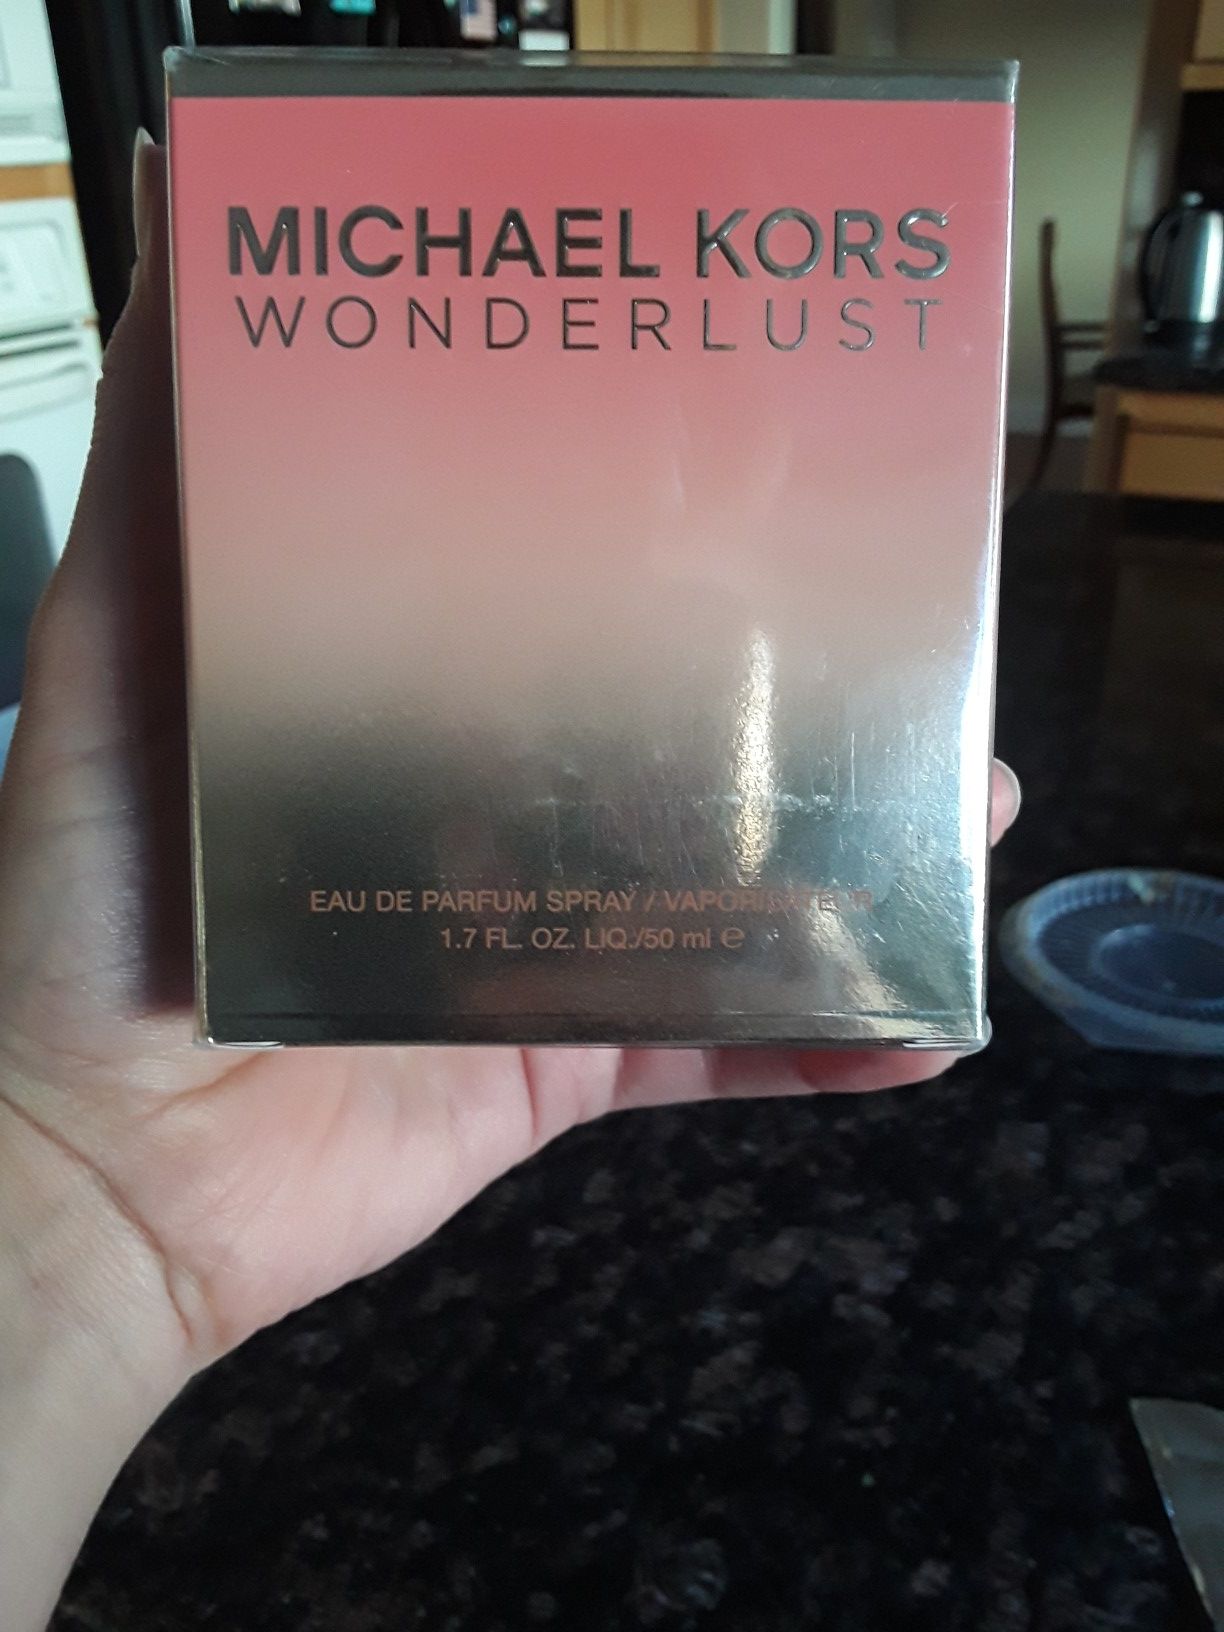 Michael Kors wonderlust fragrance